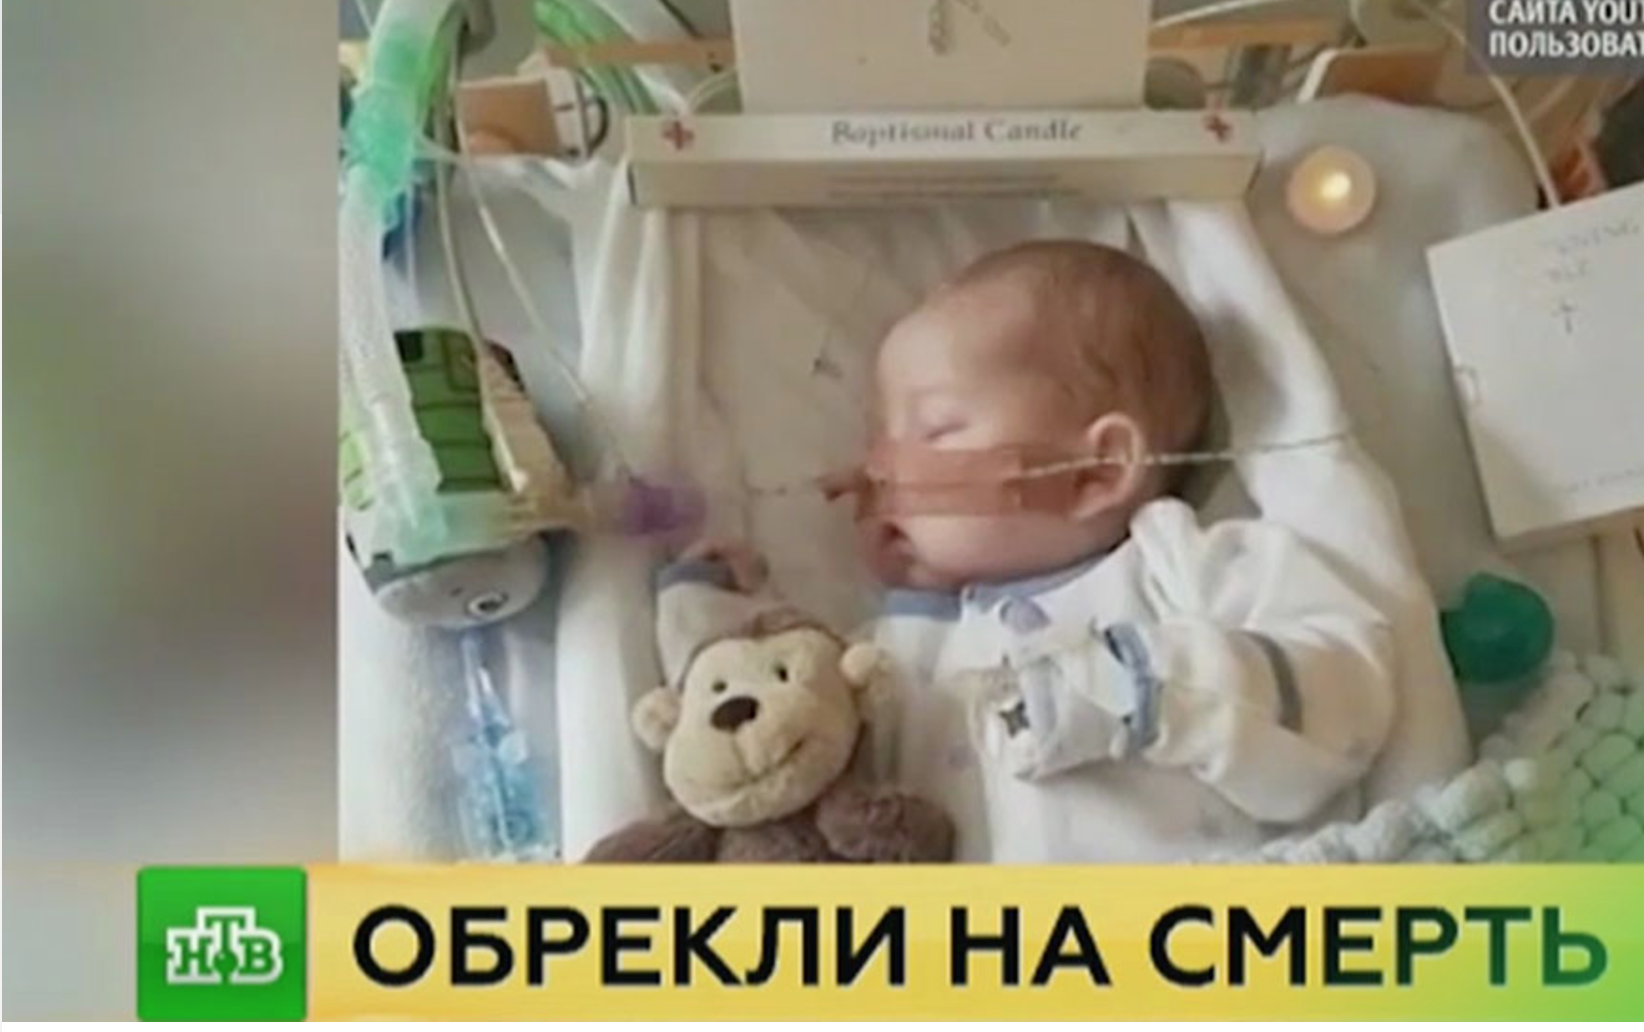 L’Église orthodoxe russe proteste contre la décision de la Cour de Strasbourg  de mettre fin à la vie de Charlie Gard, un enfant britannique atteint d’une maladie grave